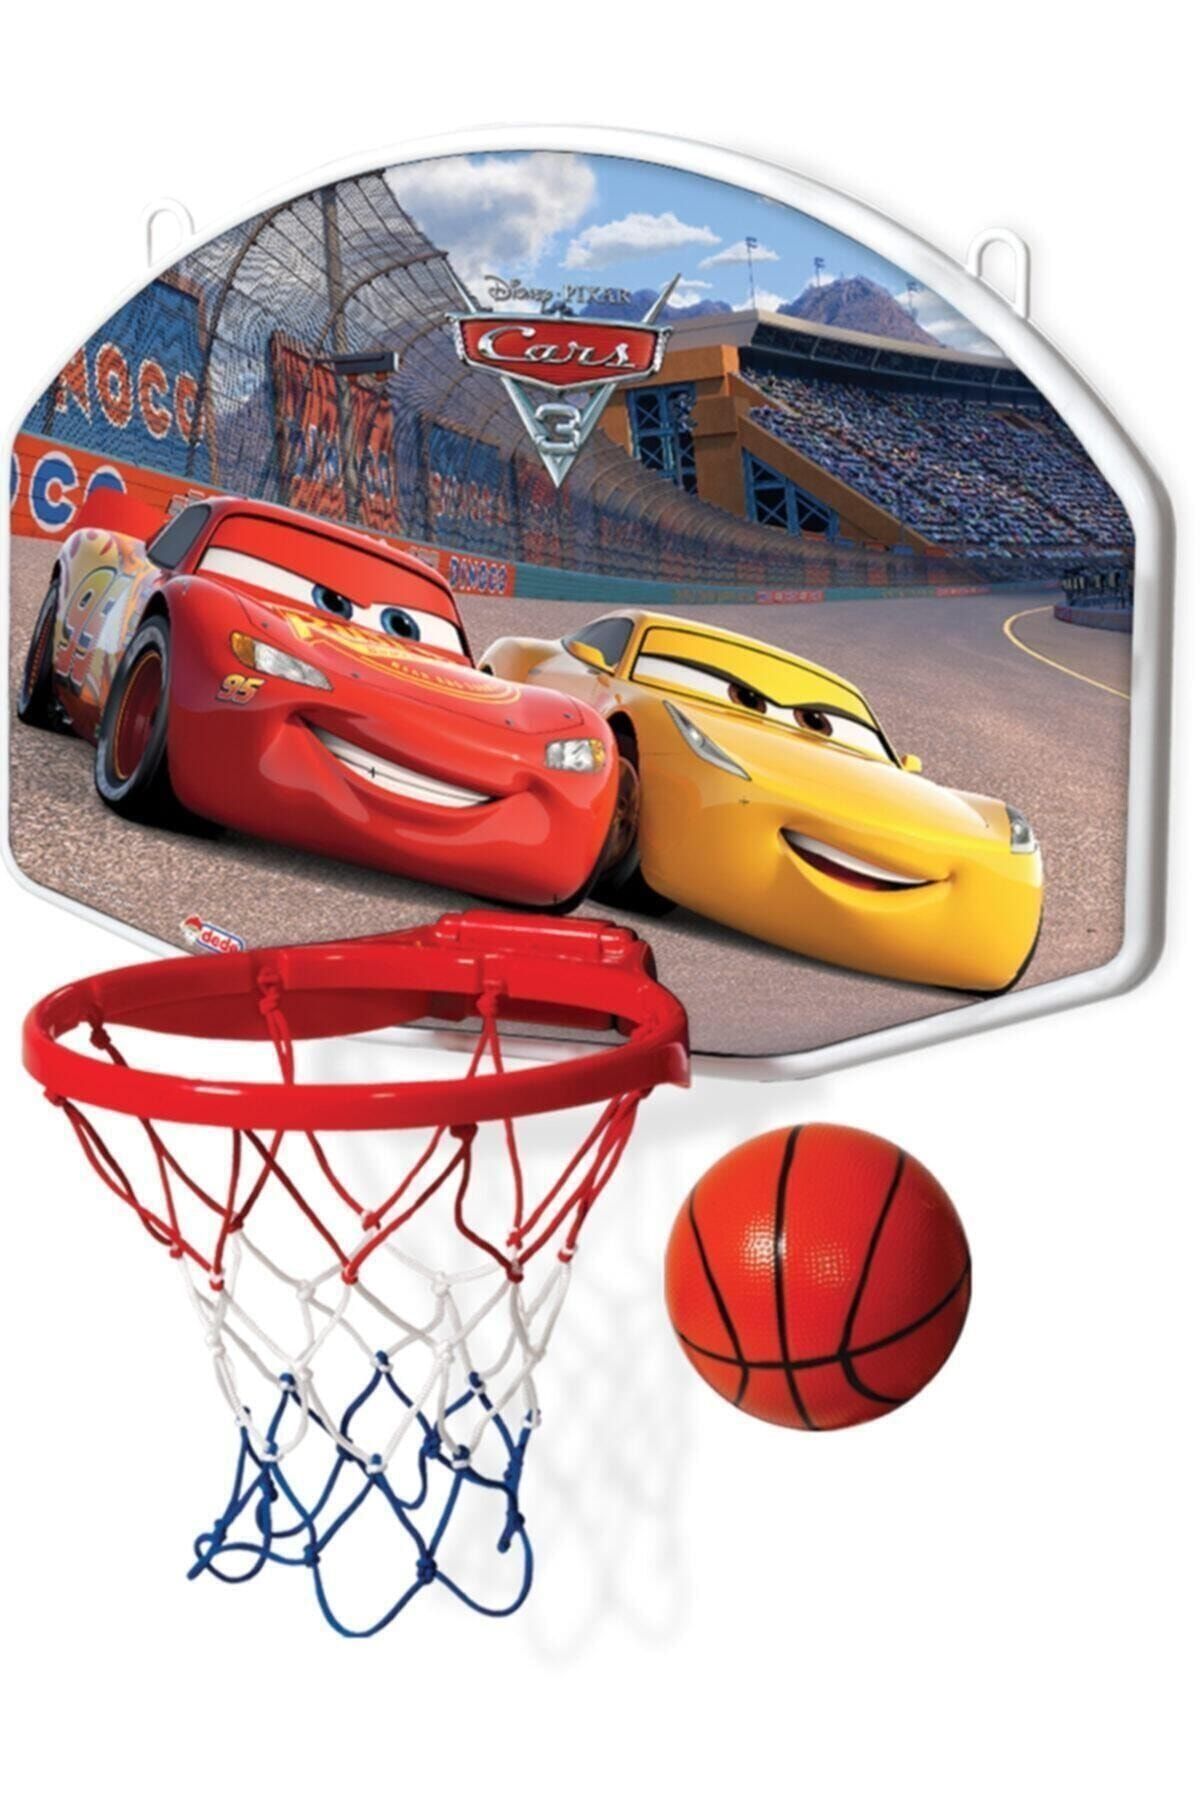 Cars Disney Cars Asılabilir Büyük Basketbol Potası Disney Arabalar Asılabilir Basketbol Potası